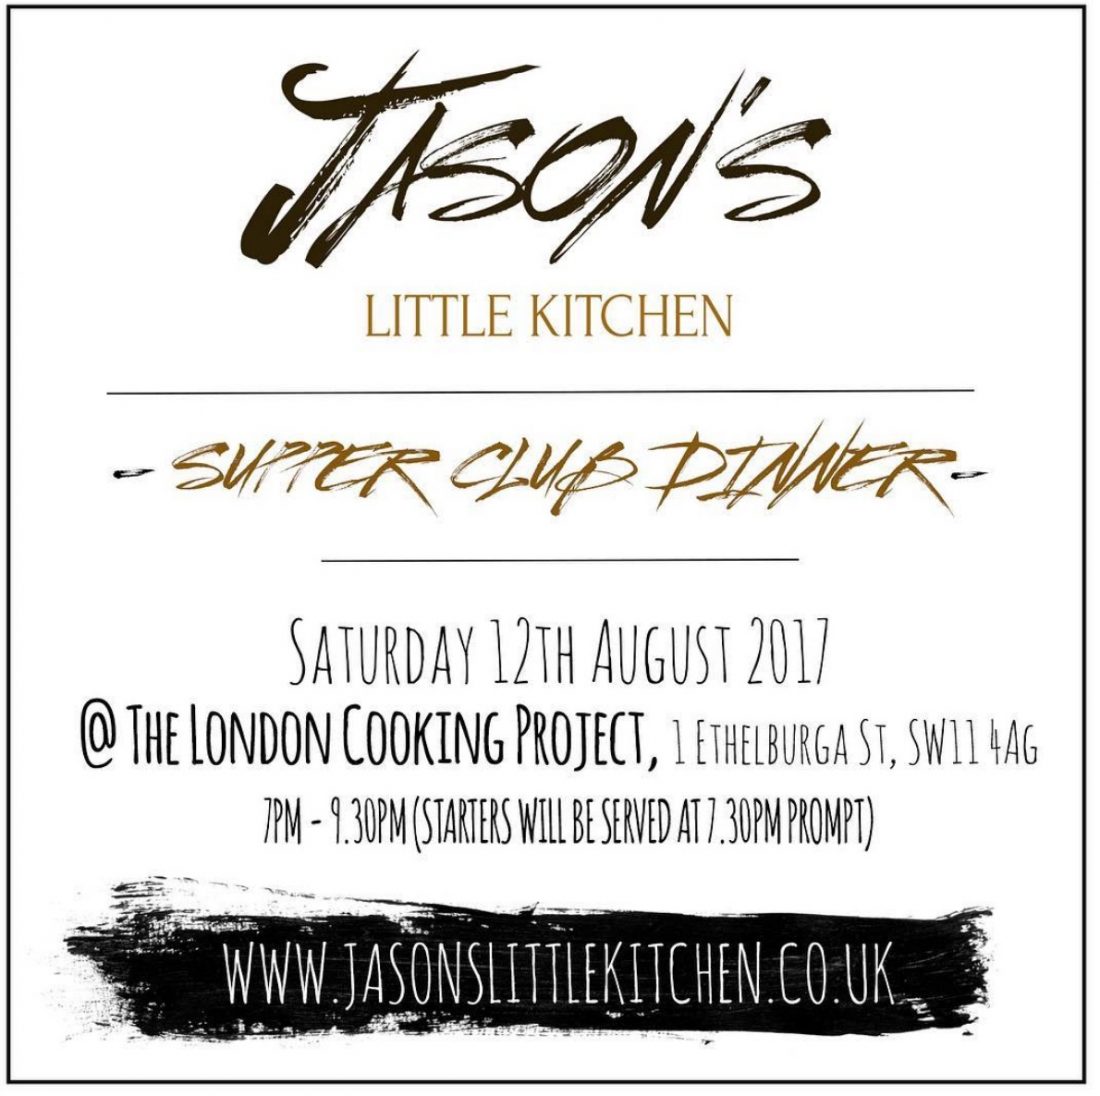 Get tickets to the next Jason’s Little Kitchen 